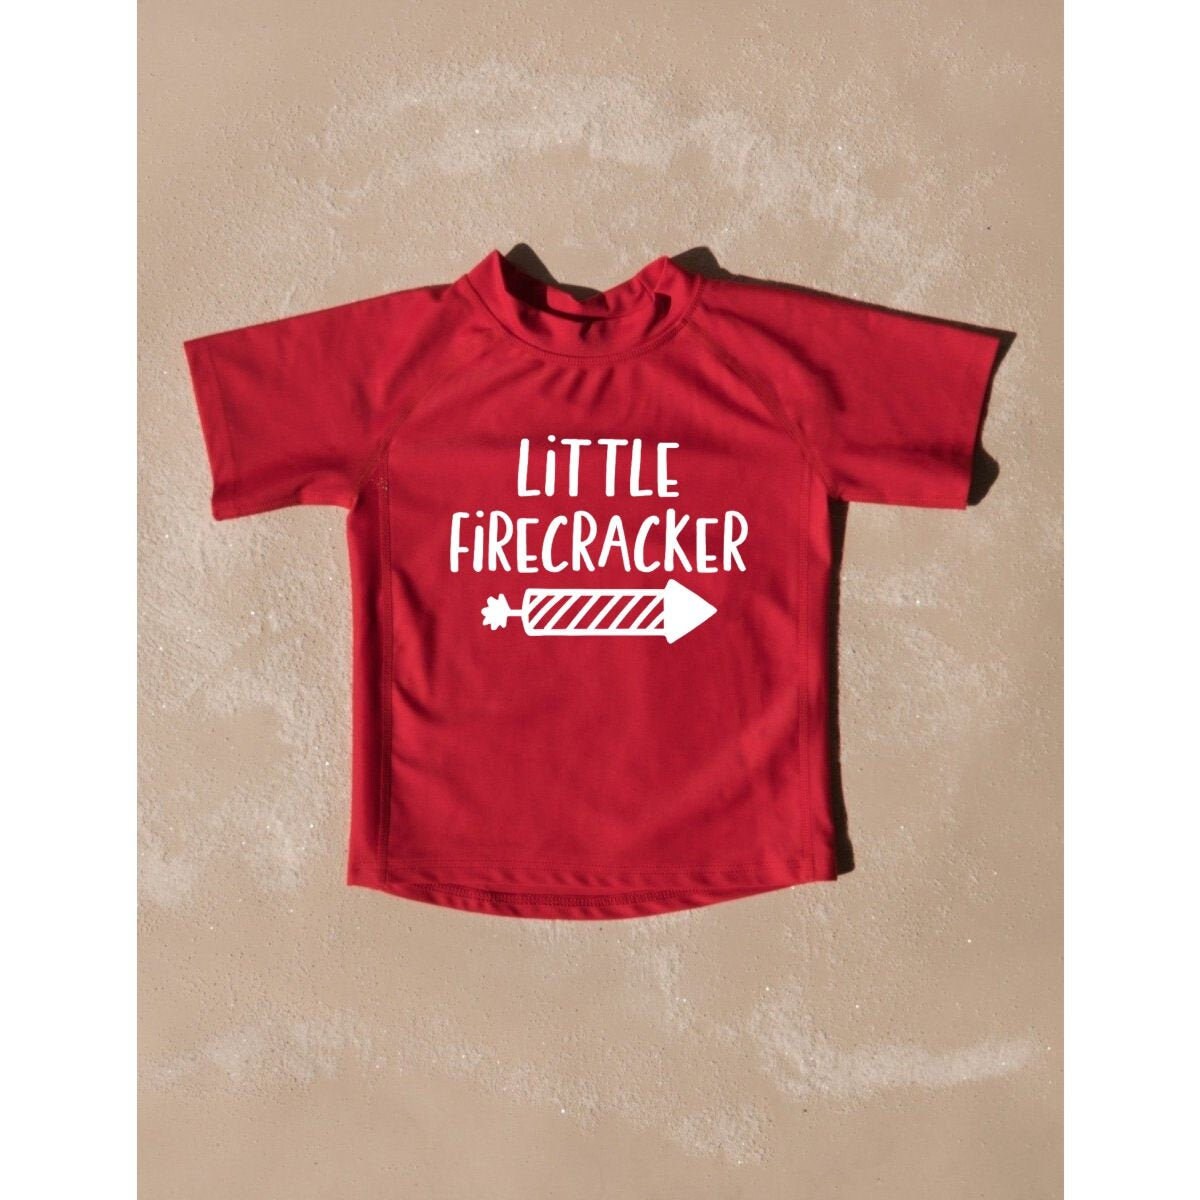 Little Firecracker Toddler Rashguard Swimwear UV Protection +50 - Kids 4th of July Swimsuit - Toddler Girl Rash Guard - Baby Boy Swimsuit